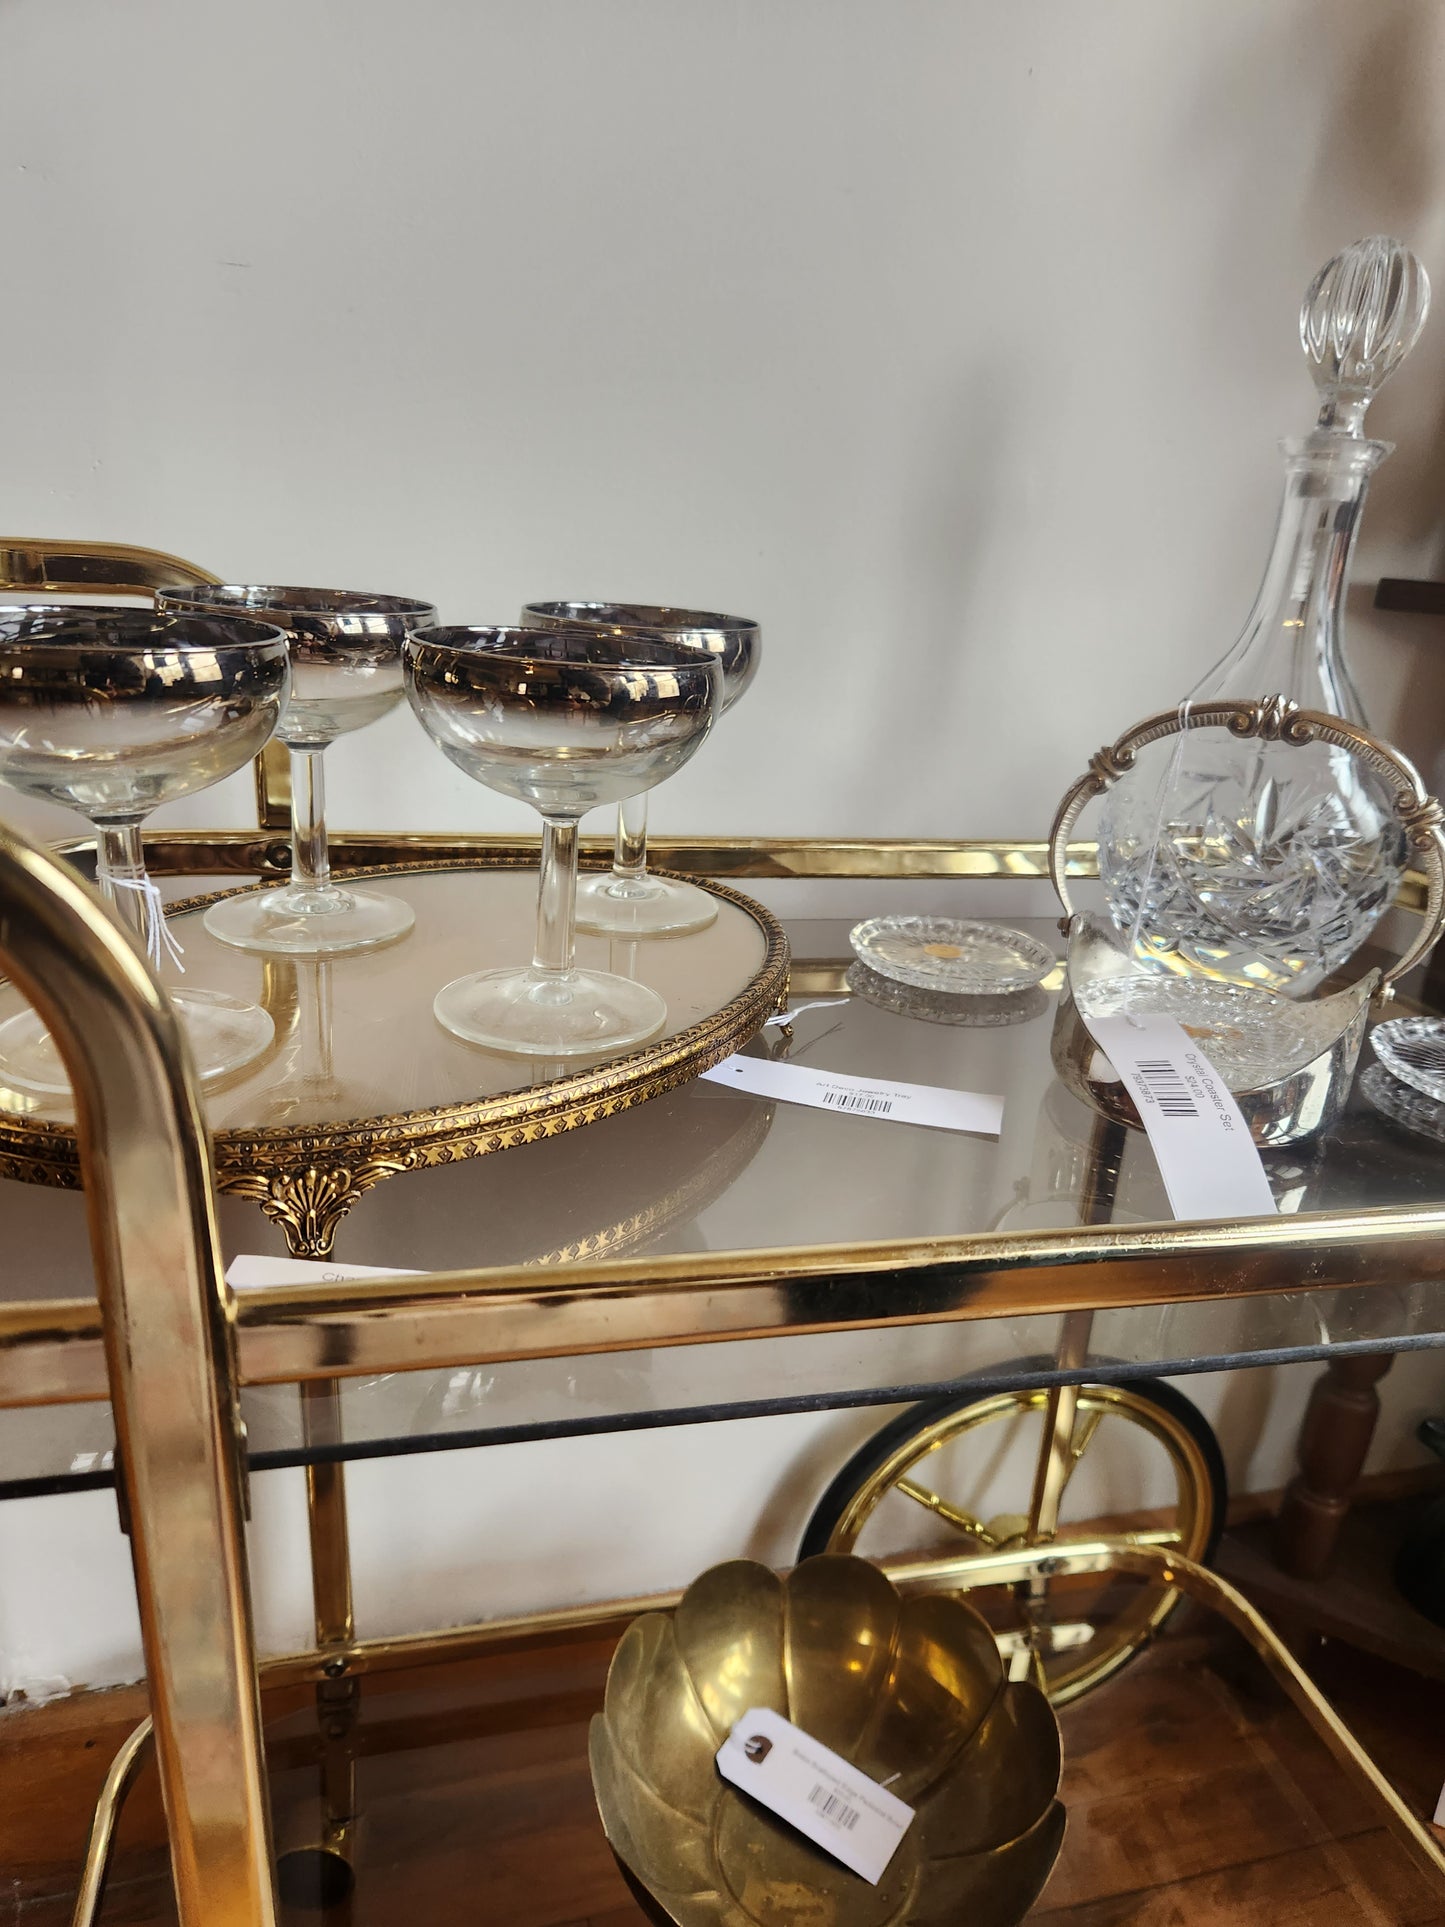 Brass and Glass Tea Cart